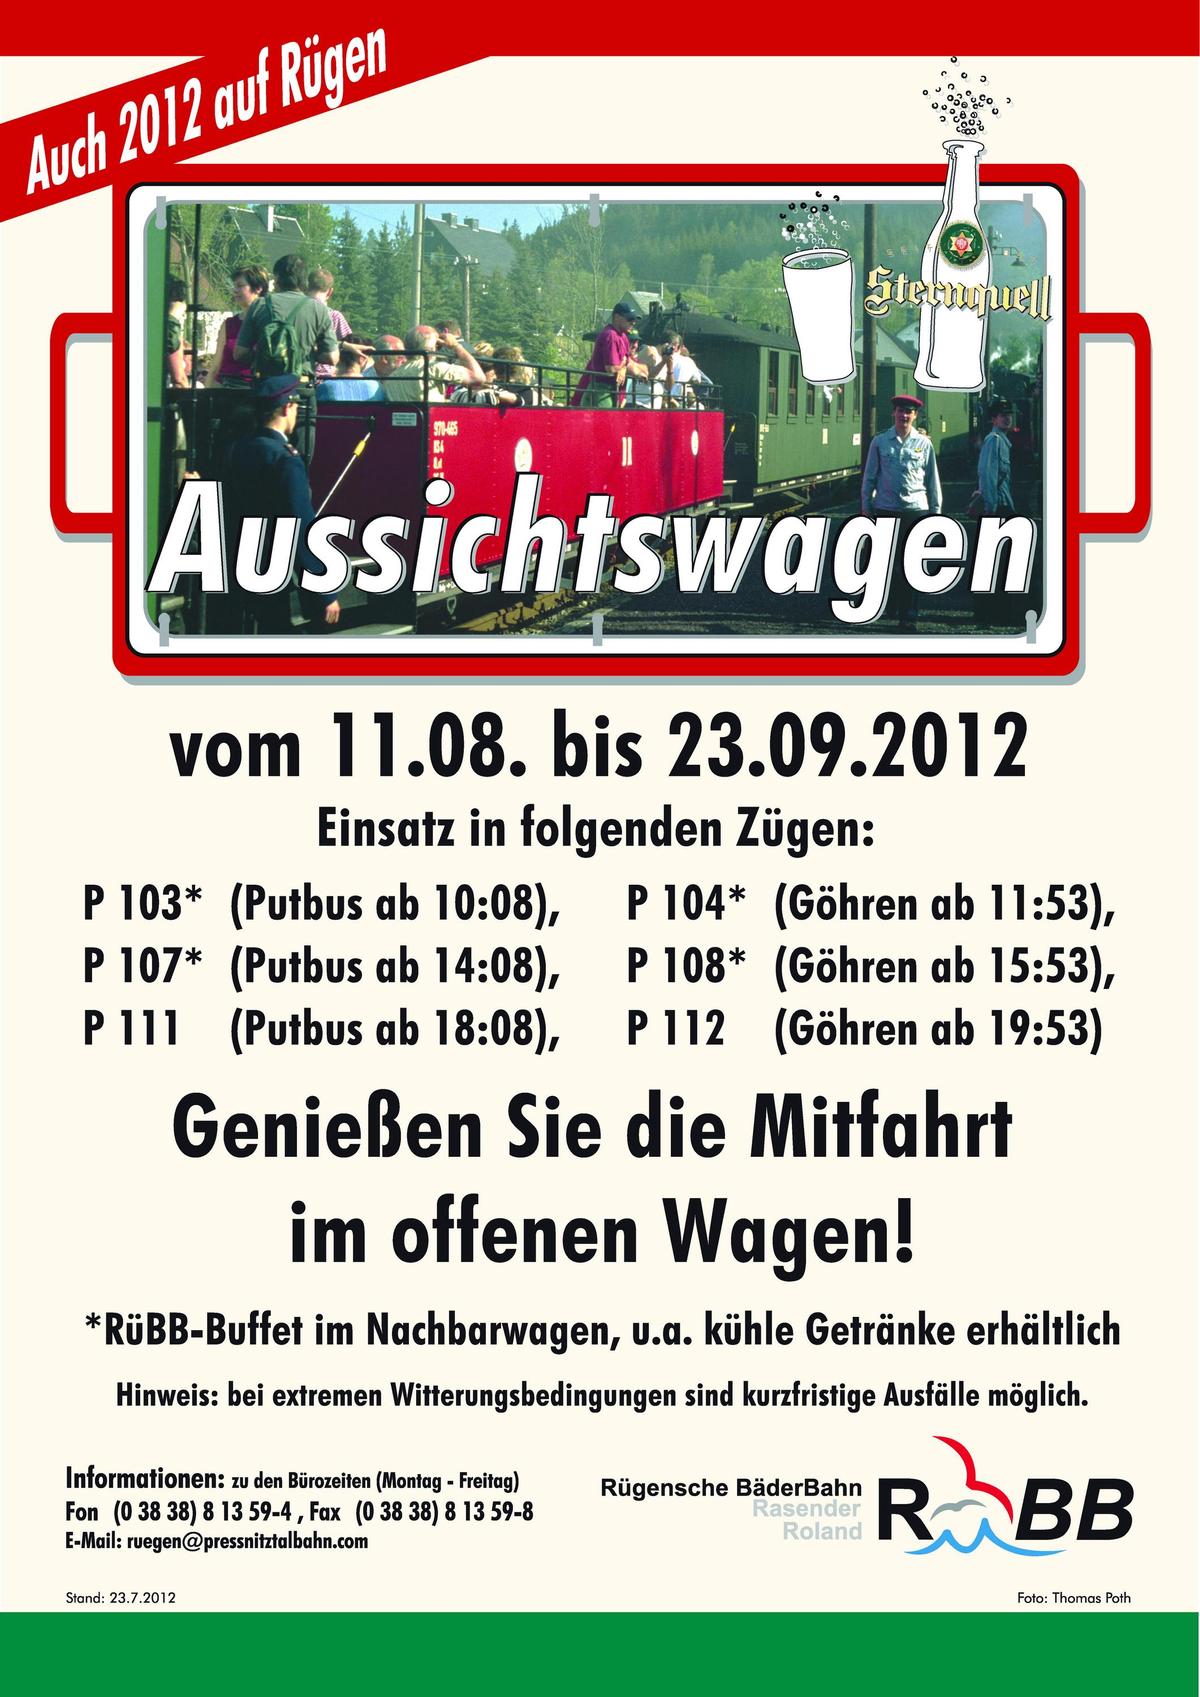 Einsatzplan für die Aussichtswagen in den Zügen der RüBB vom 11. August bis 23.09.2012